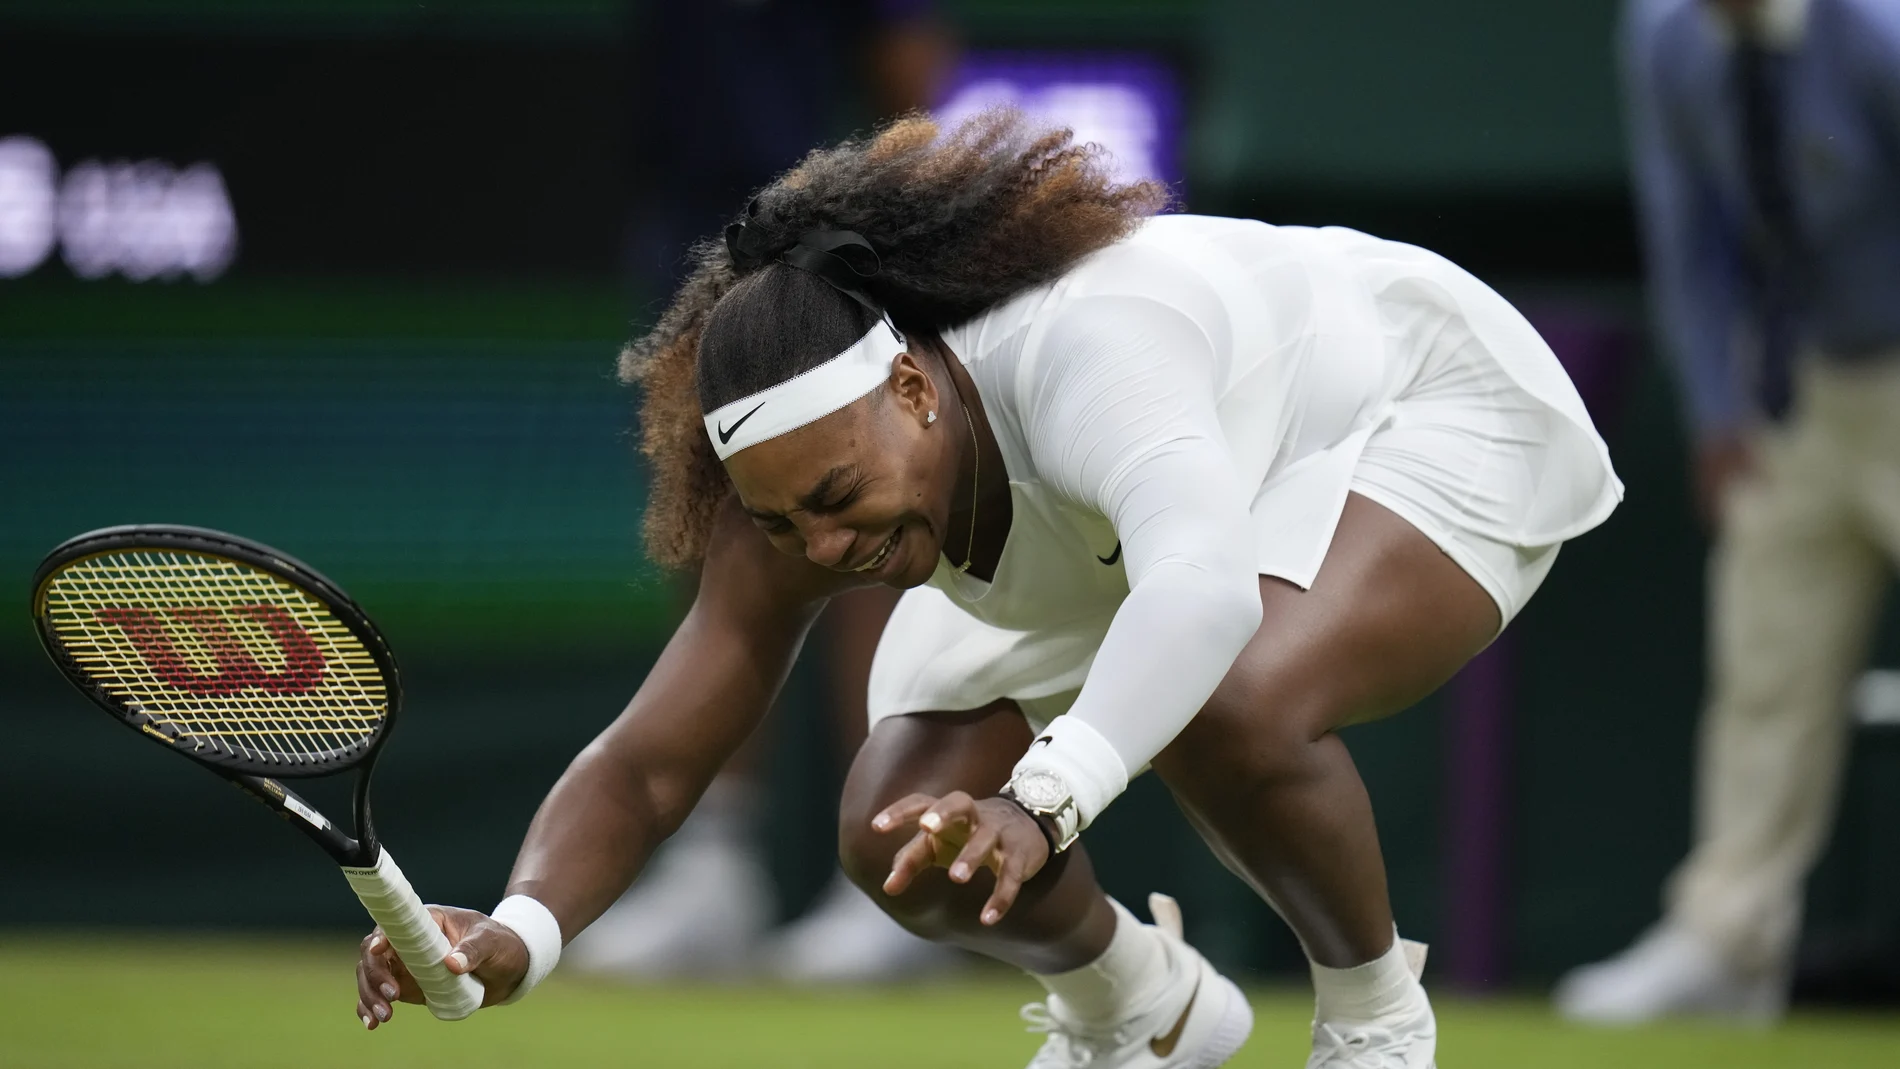 La caída que provocó la lesión de Serena Williams en la central de Wimbledon